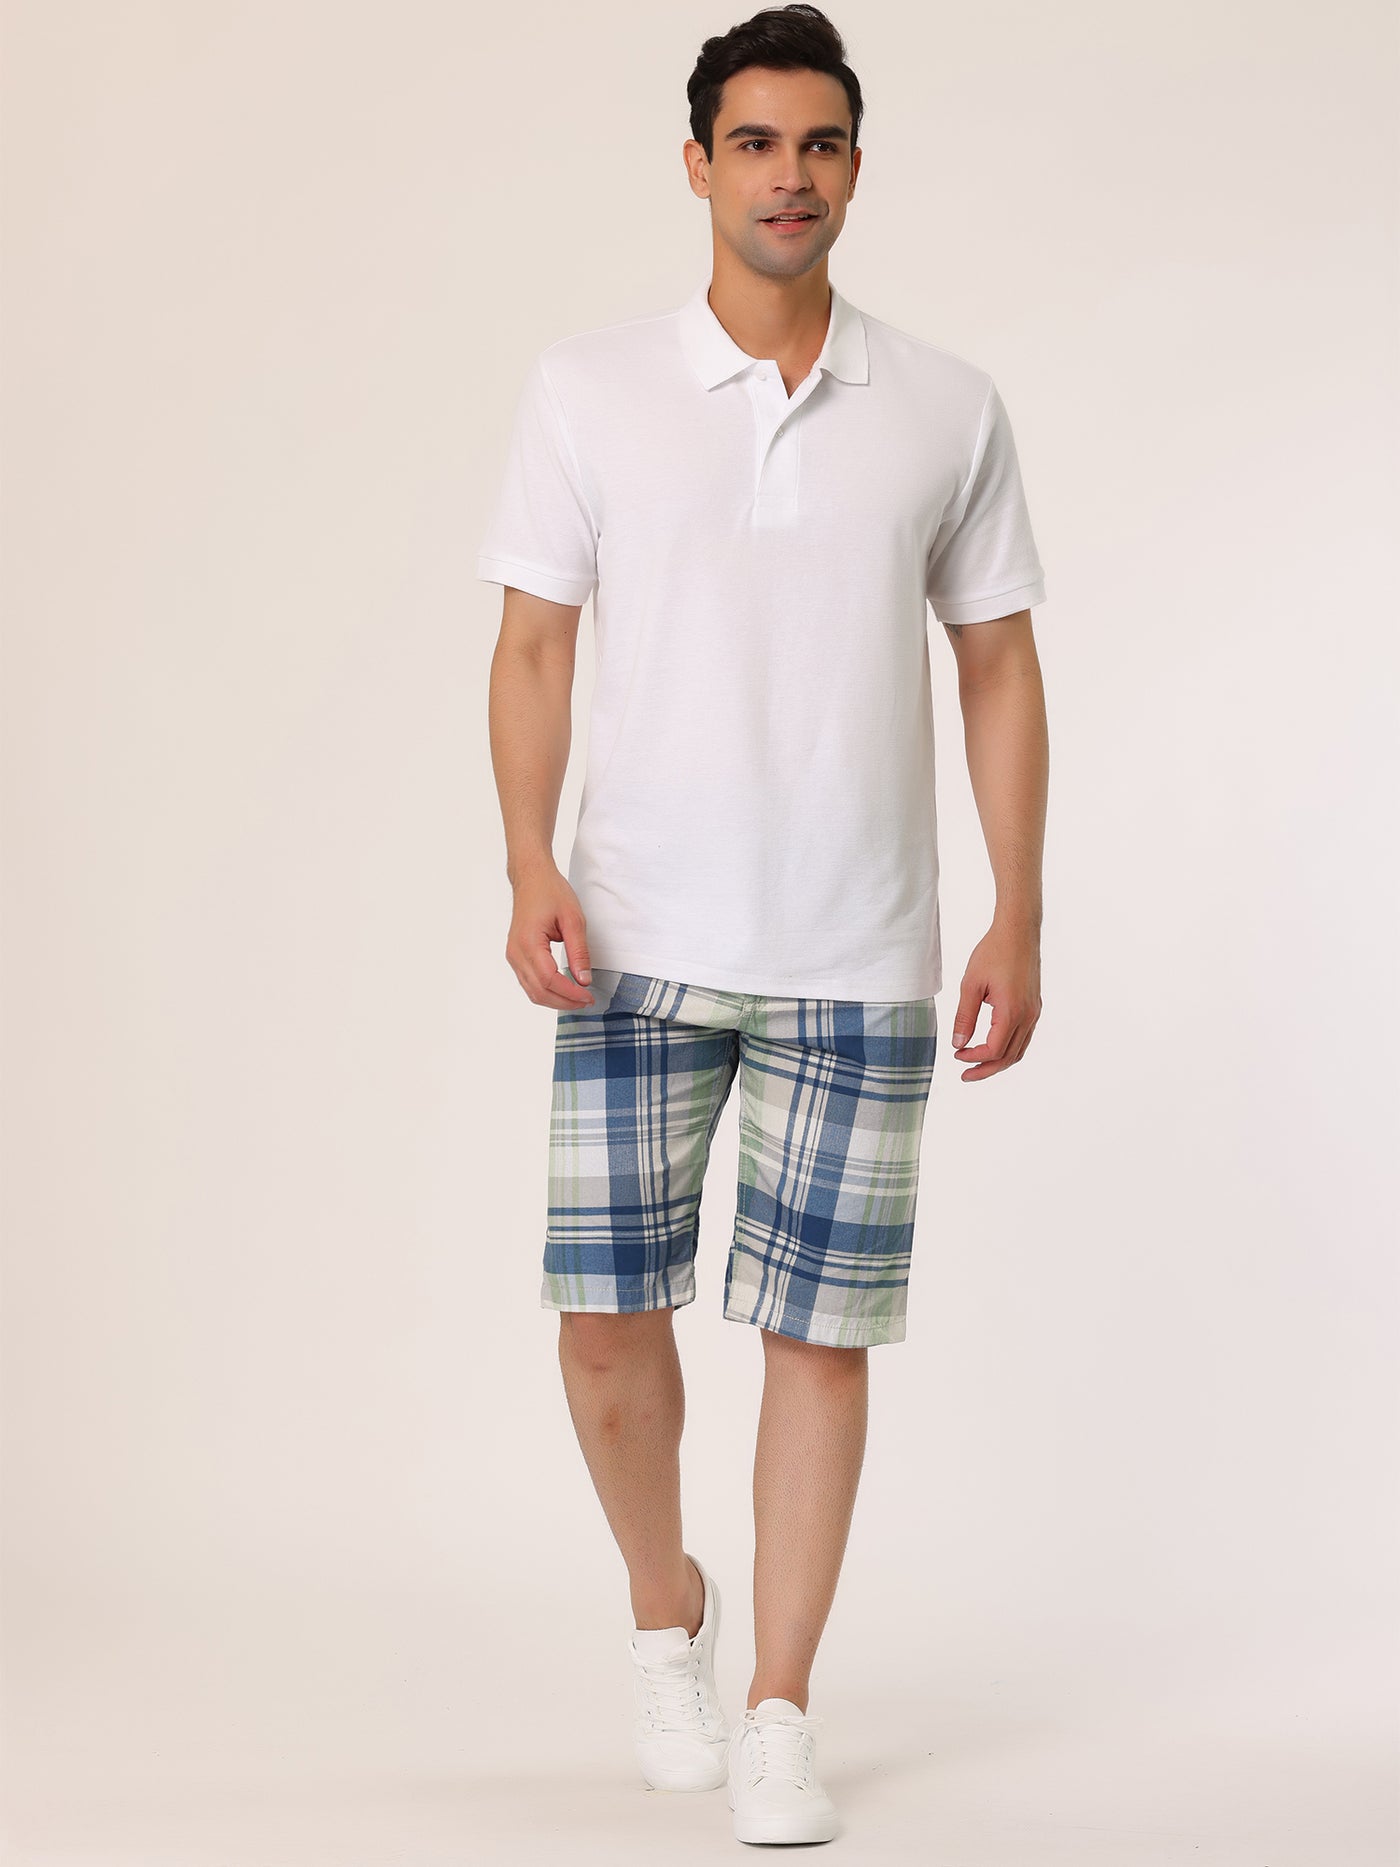 Bublédon Men's Summer Plaid Shorts Slim Fit Flat Front Pattern Pants